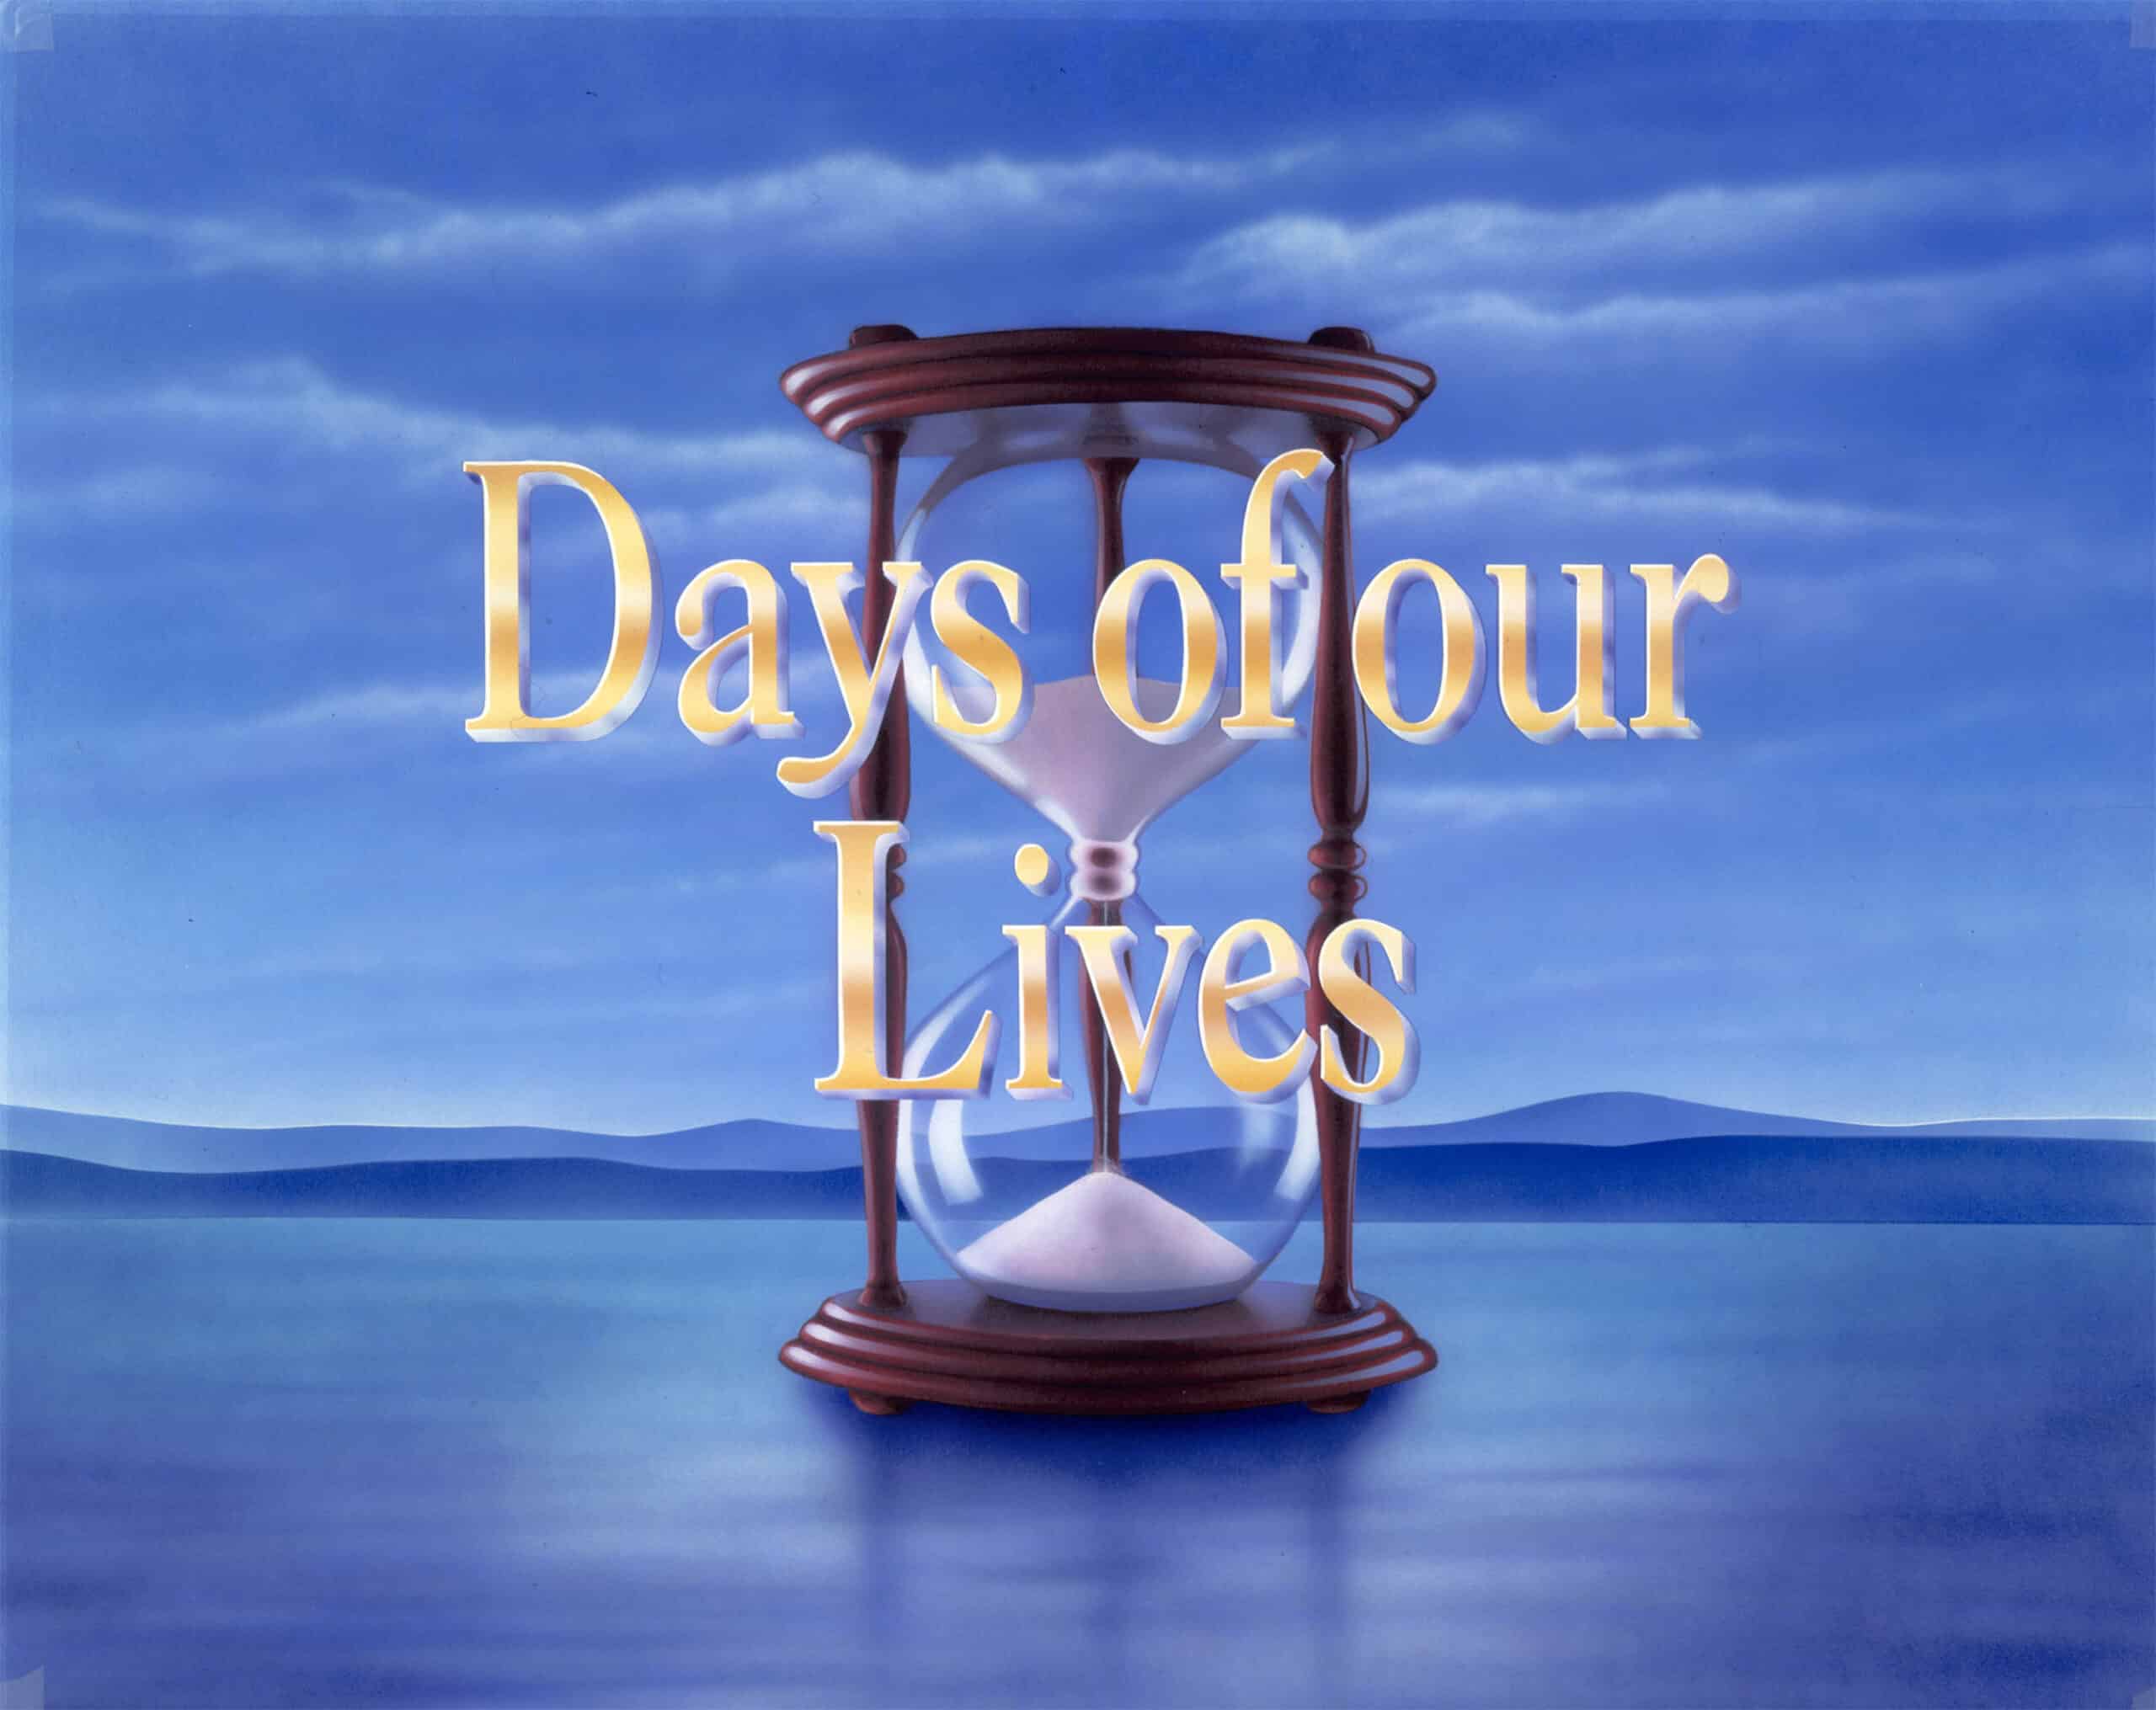 Le soap Days of our lives renouvelé pour une 57ème et 58ème saison VL